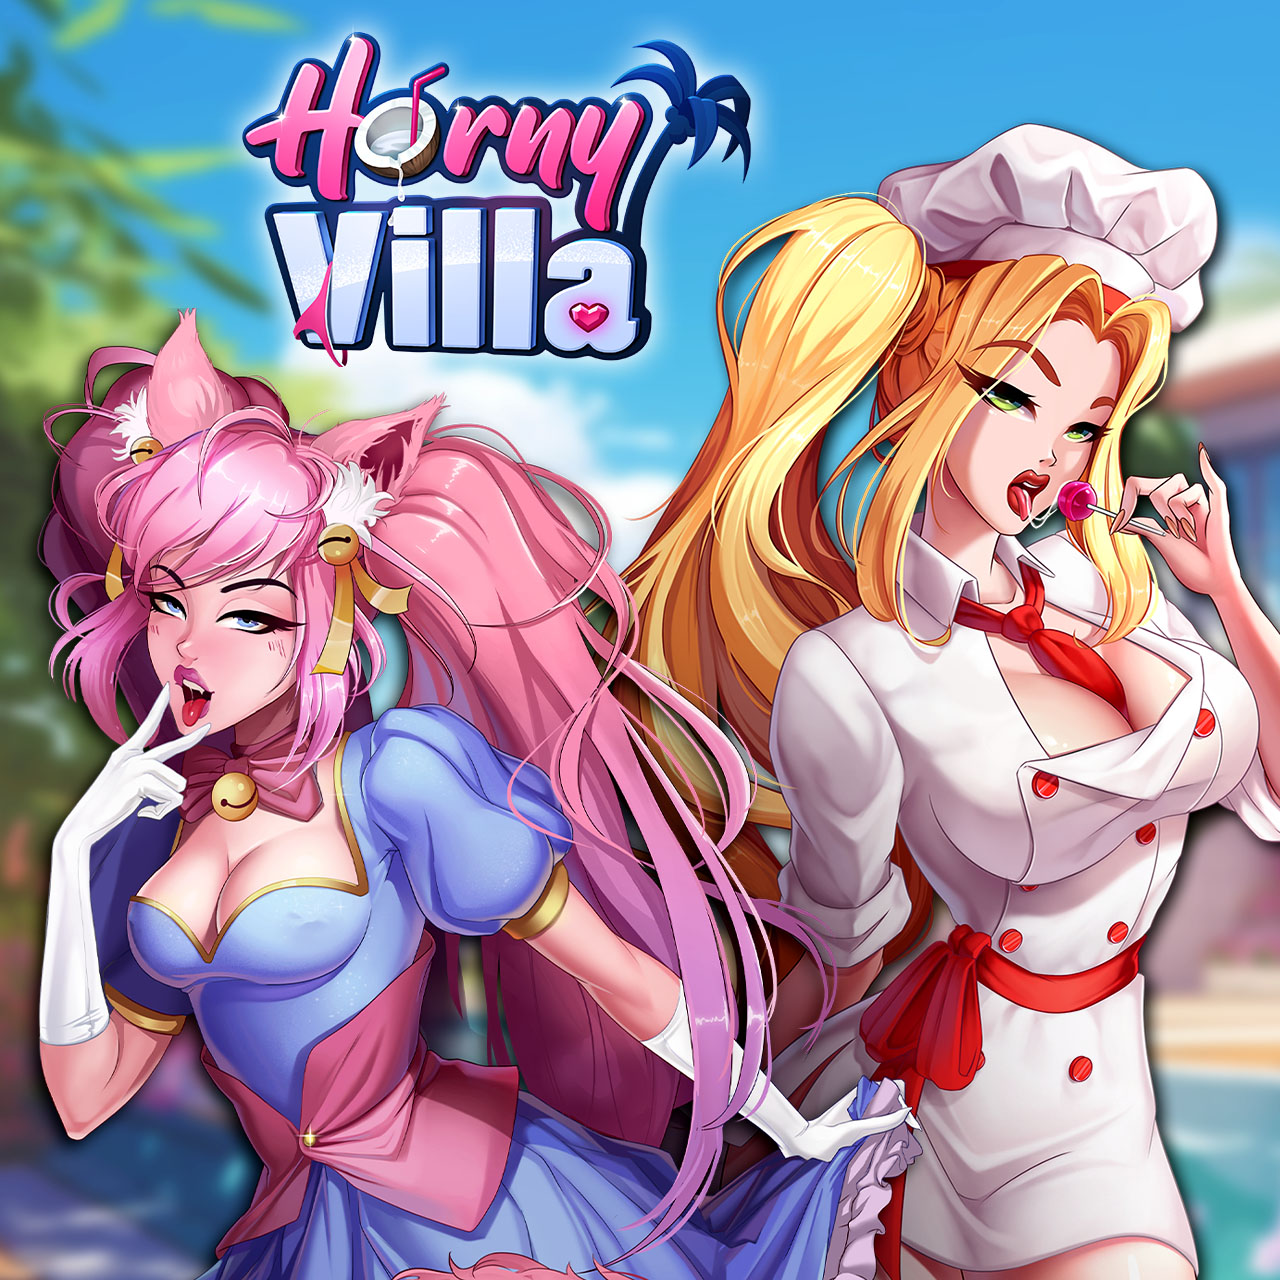 Porn Villa Game - Horny Villa - Puzzle Sex Game with APK file | Nutaku